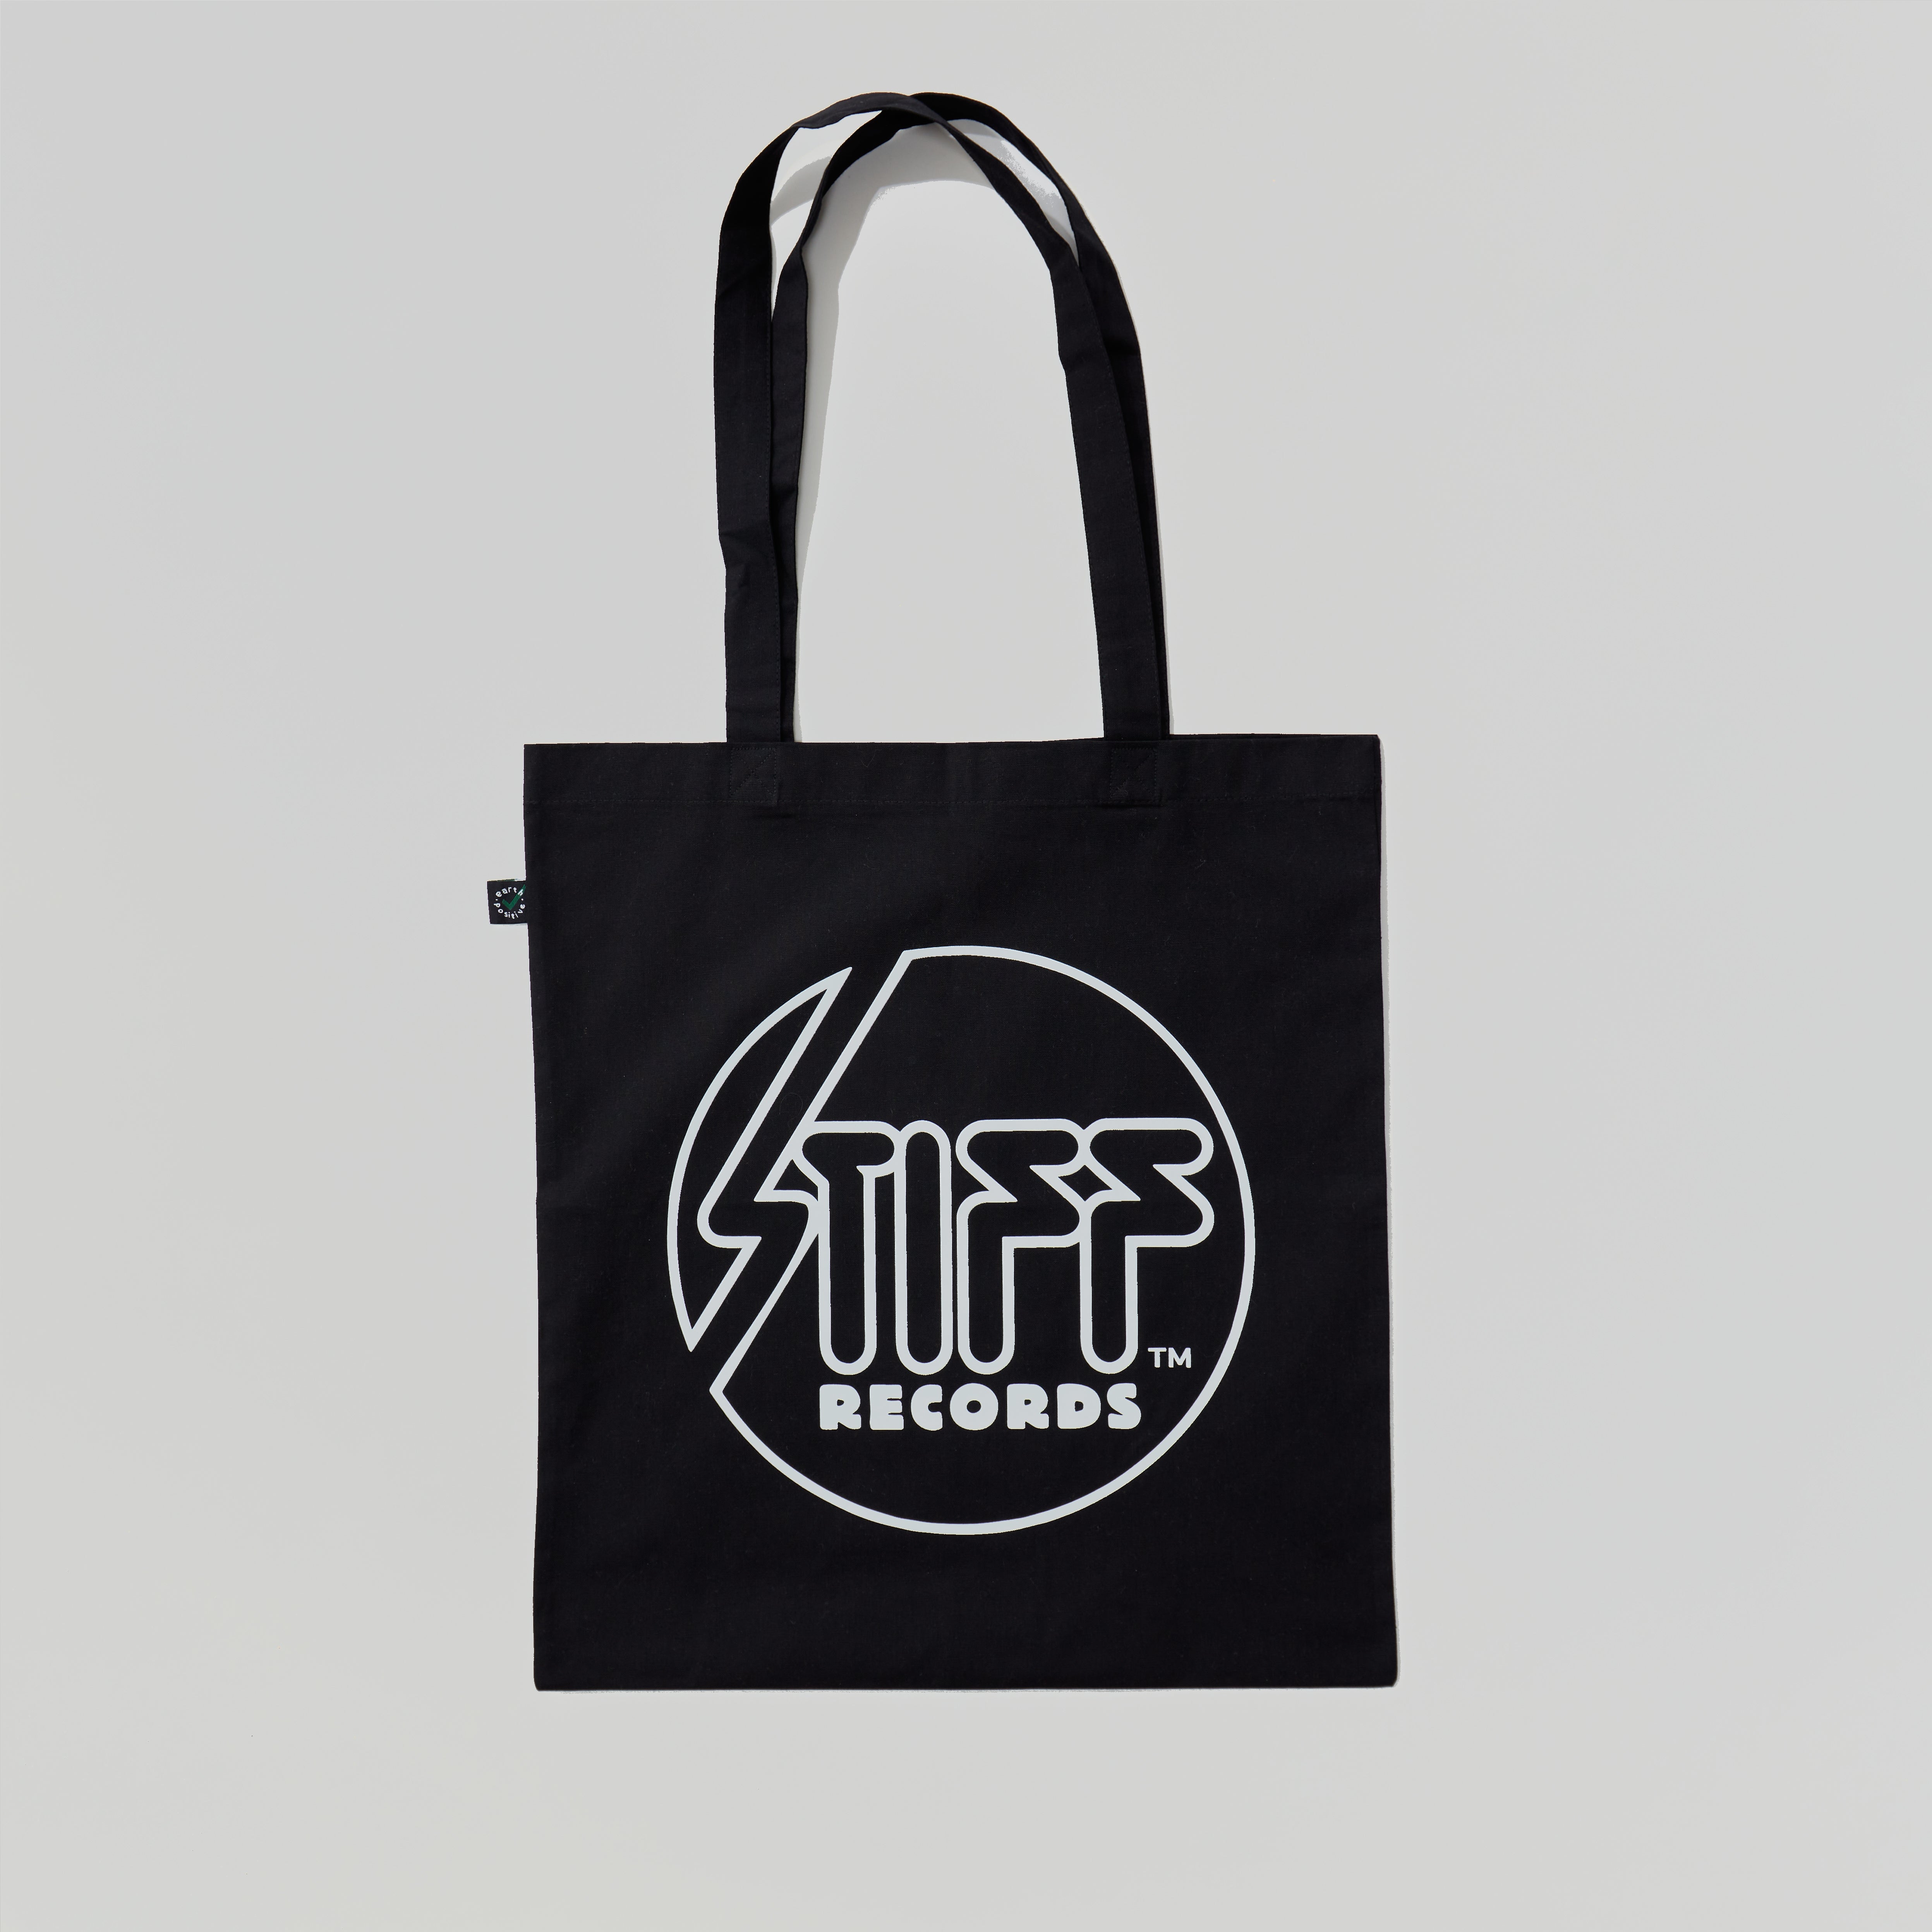 Stiff Records - Black Stiff Records Logo Tote Bag 